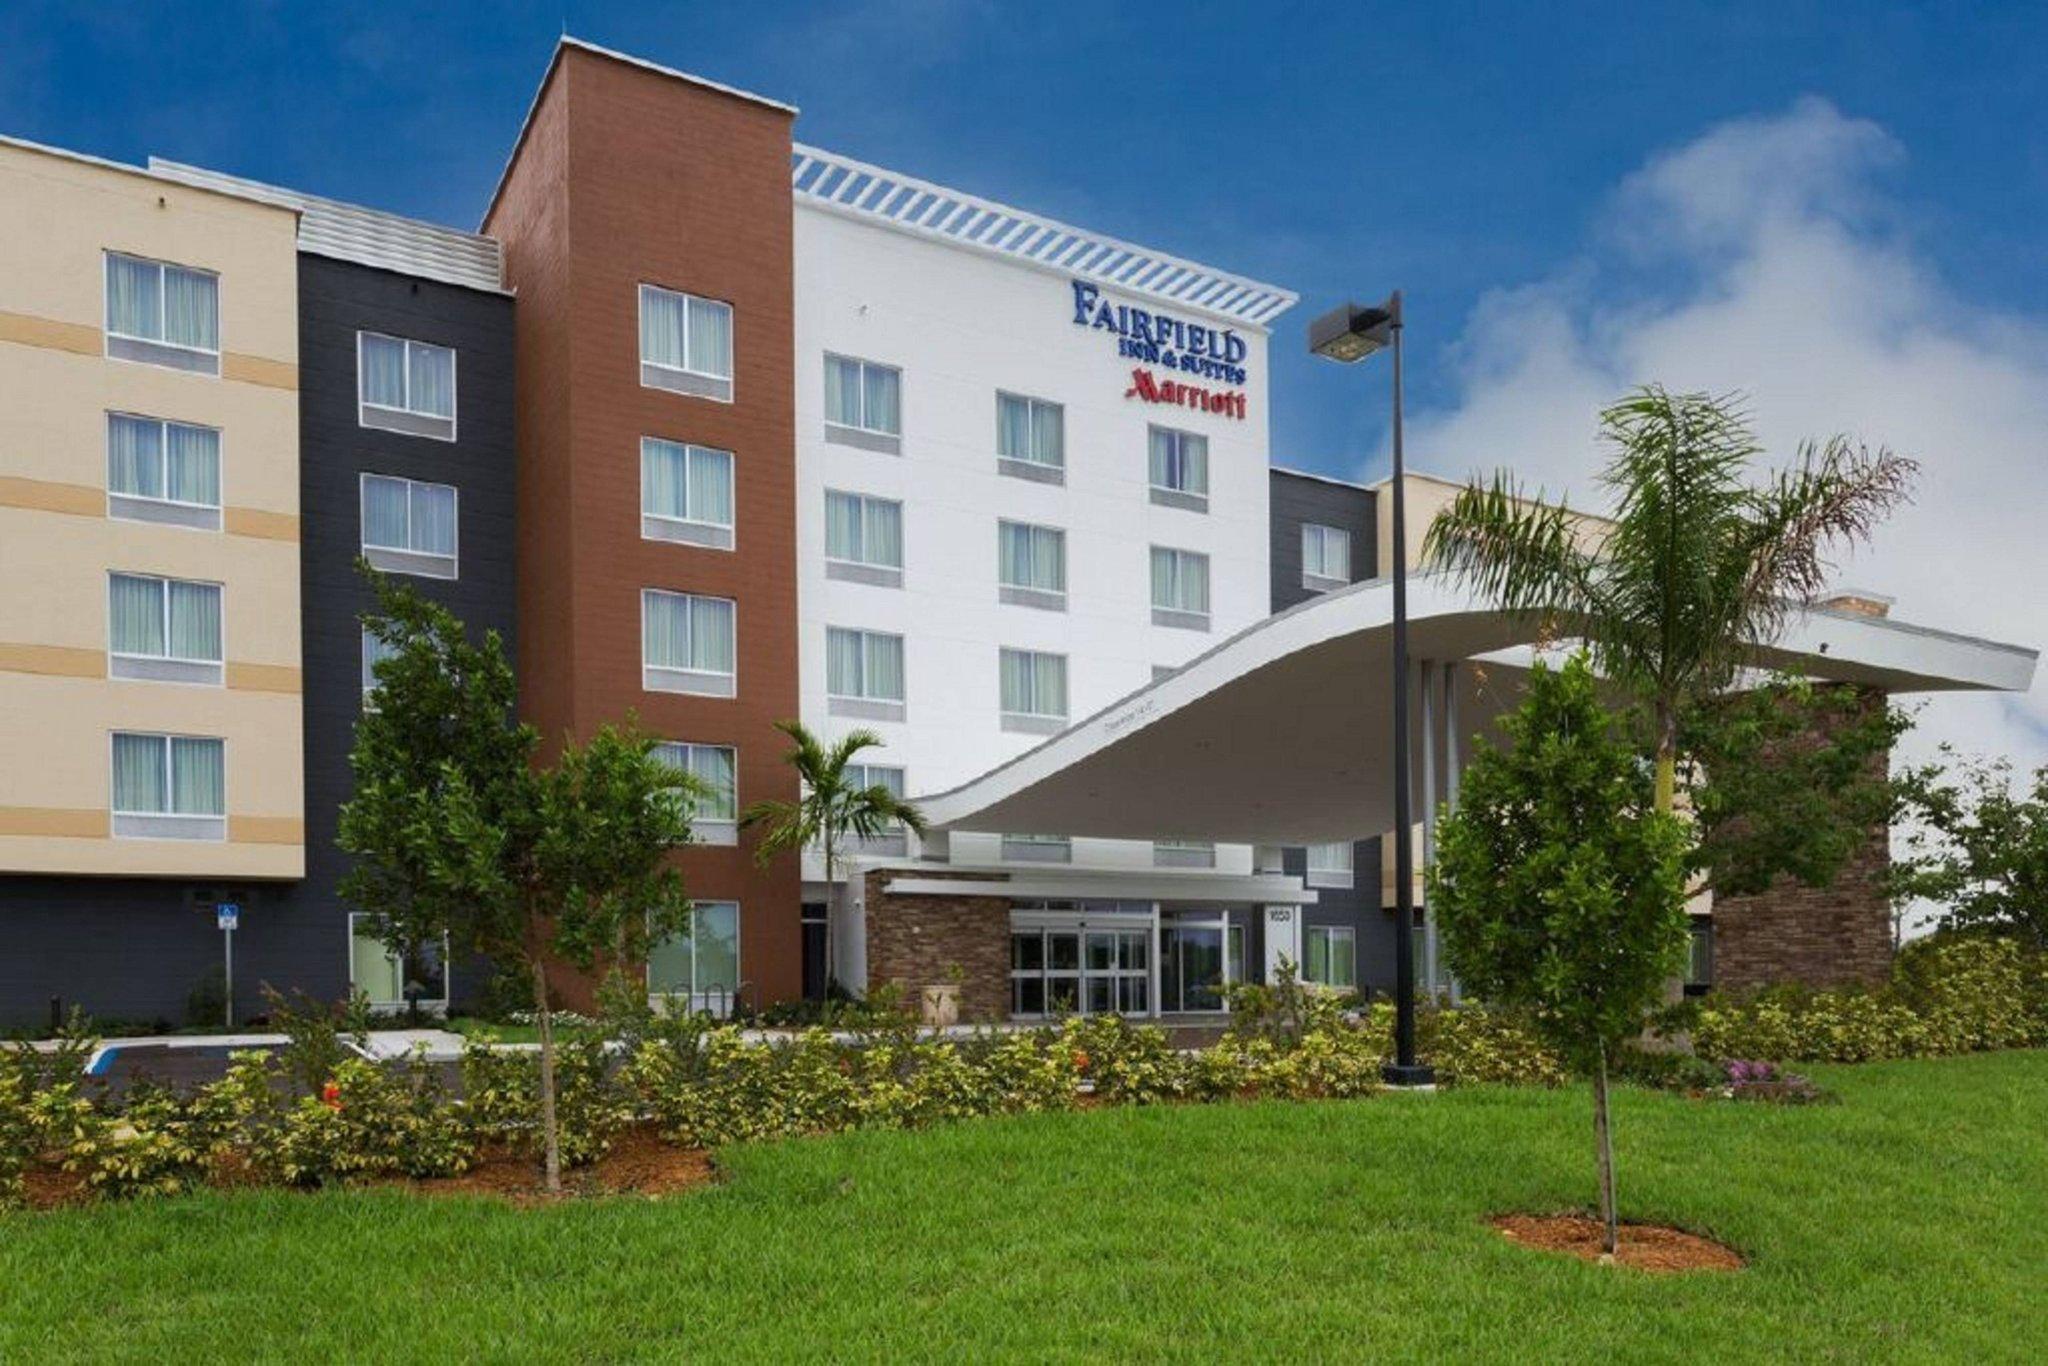 Fairfield Inn & Suites Fort Lauderdale Pembroke Pines in Pembroke Pines, FL